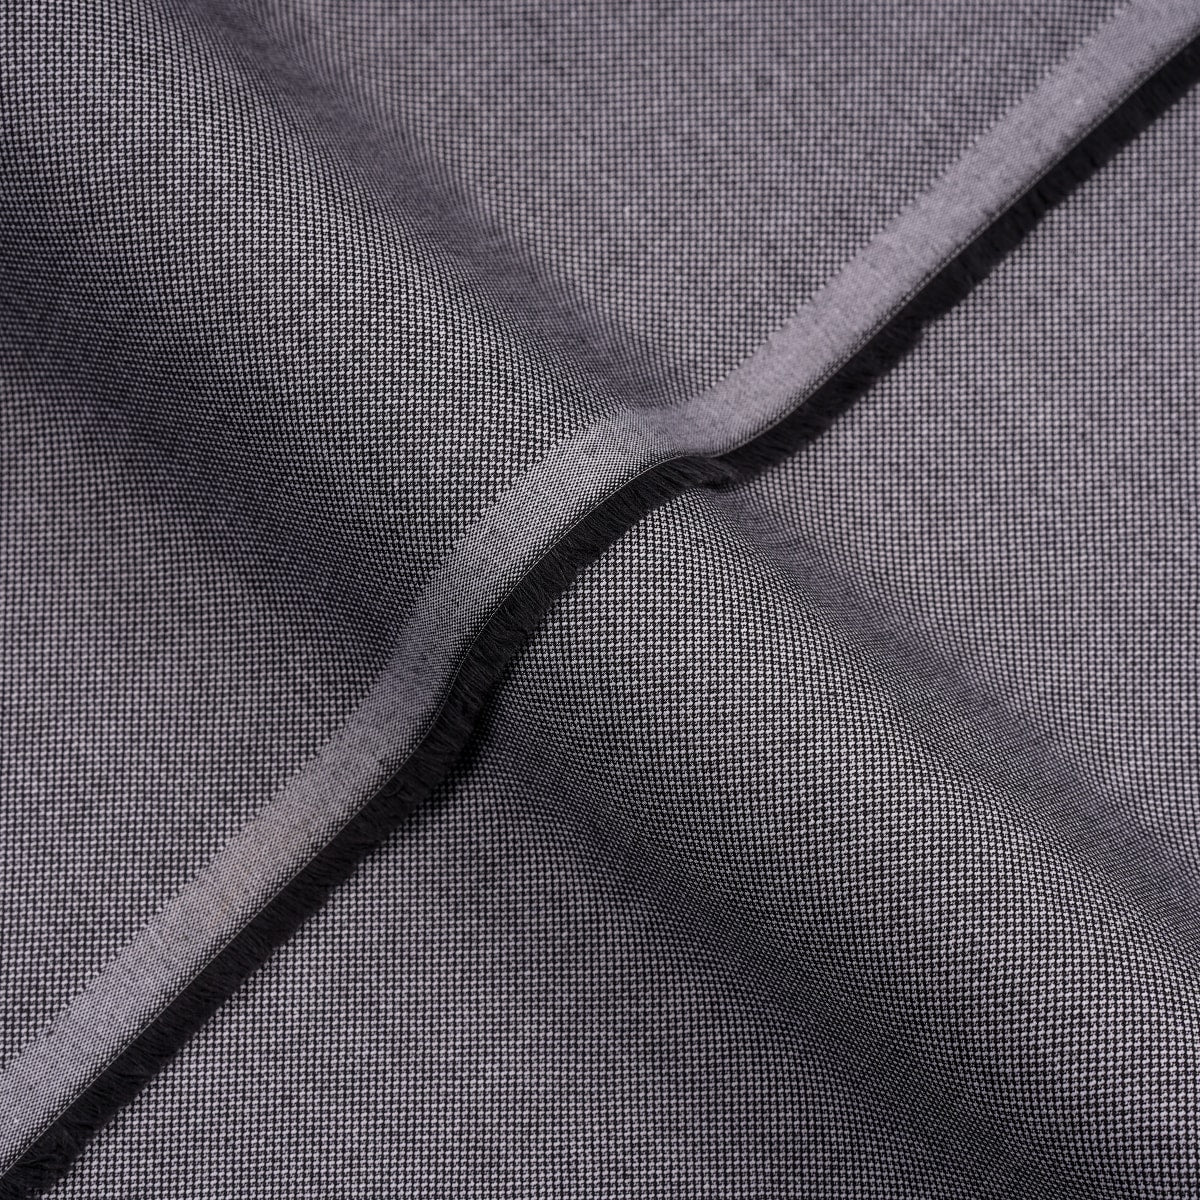 Dobby Textured, Medium Grey, Bravo Shirting Fabric